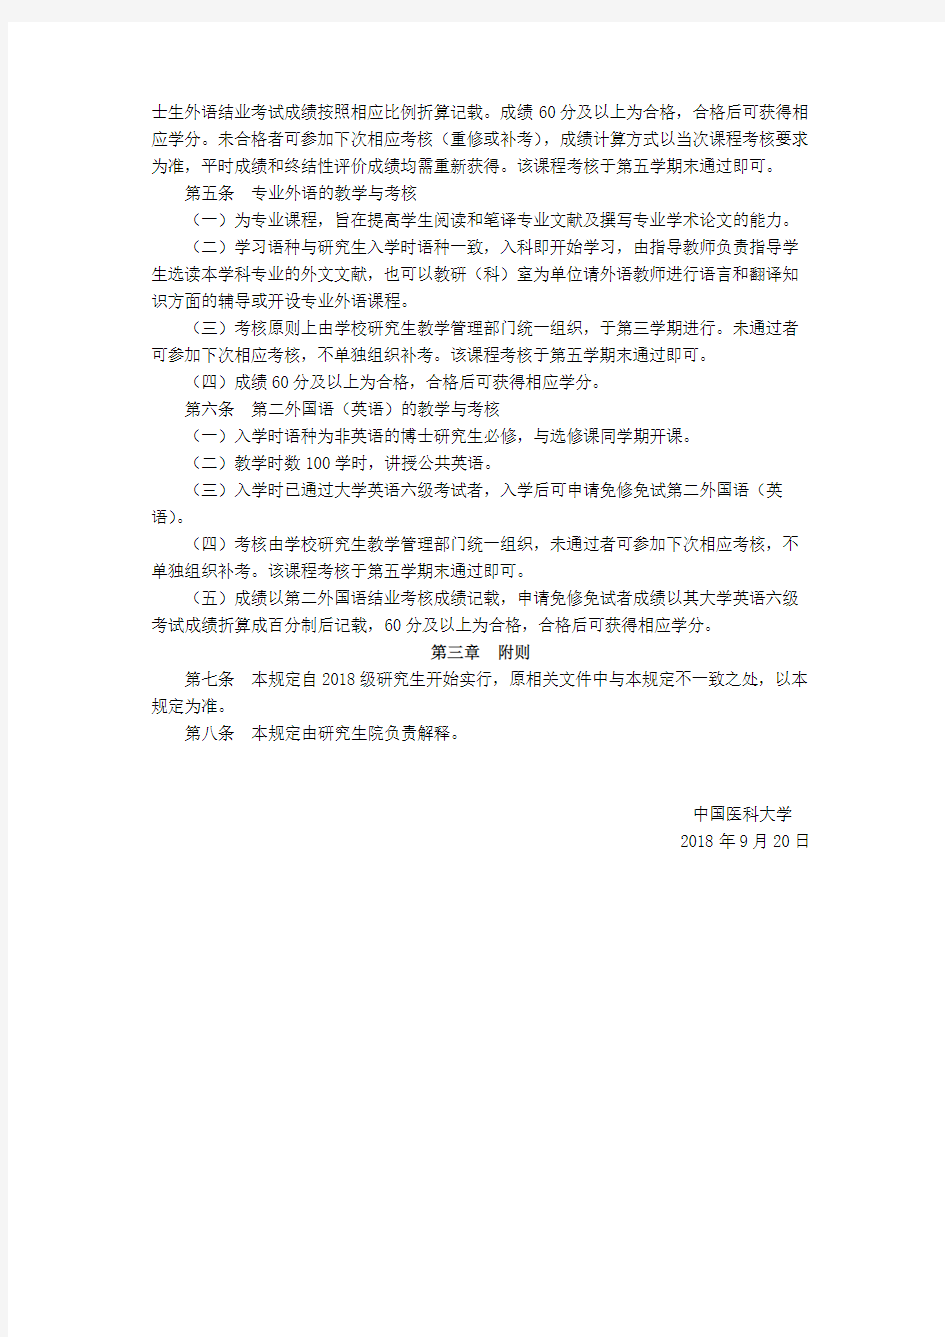 中国医科大学研究生外国语教学与考核的有关规定(2018)